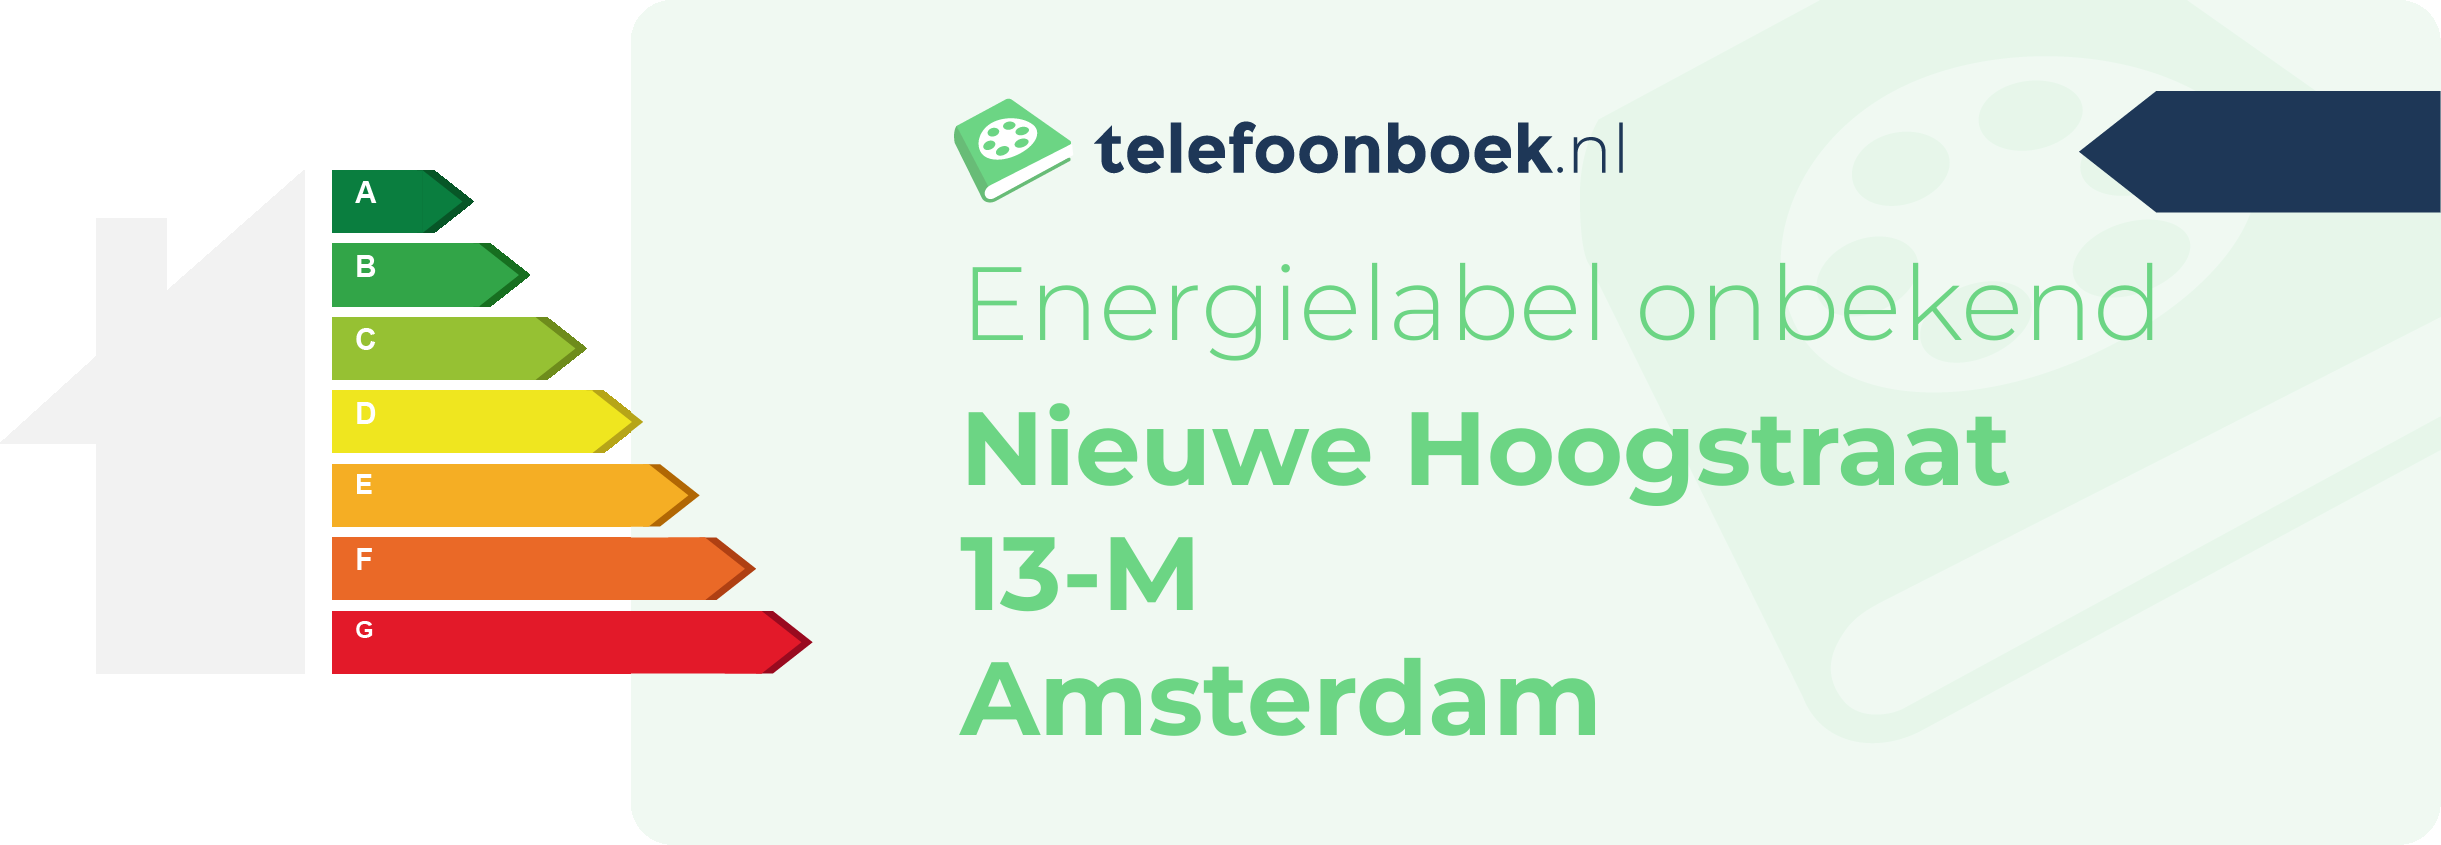 Energielabel Nieuwe Hoogstraat 13-M Amsterdam